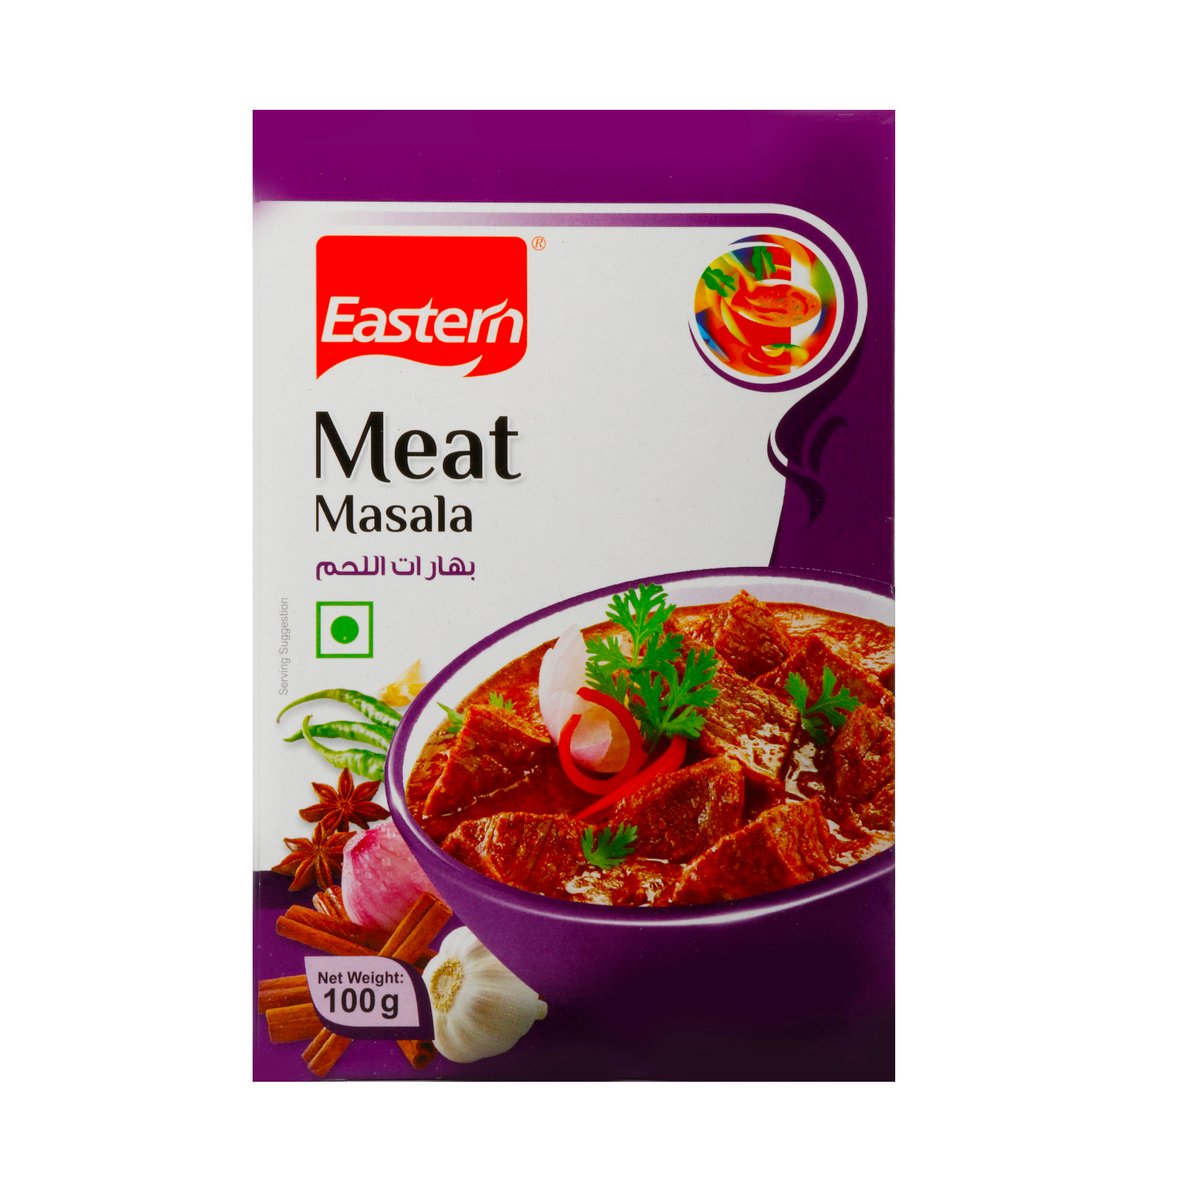 Eastern Meat Masala 100g